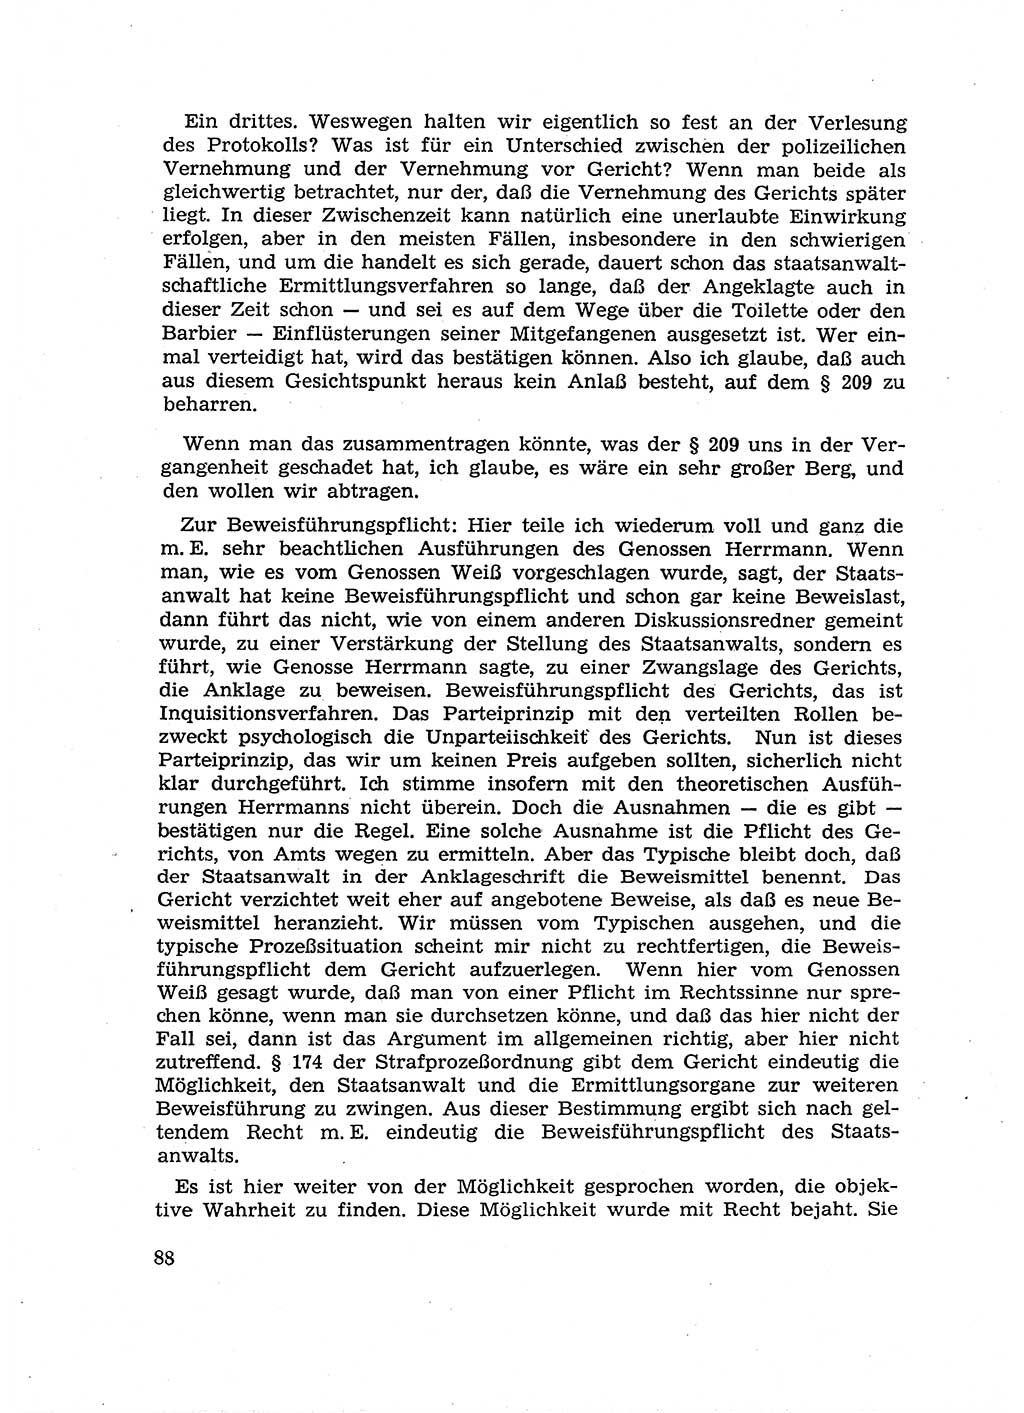 Fragen des Beweisrechts im Strafprozess [Deutsche Demokratische Republik (DDR)] 1956, Seite 88 (Fr. BeweisR. Str.-Proz. DDR 1956, S. 88)